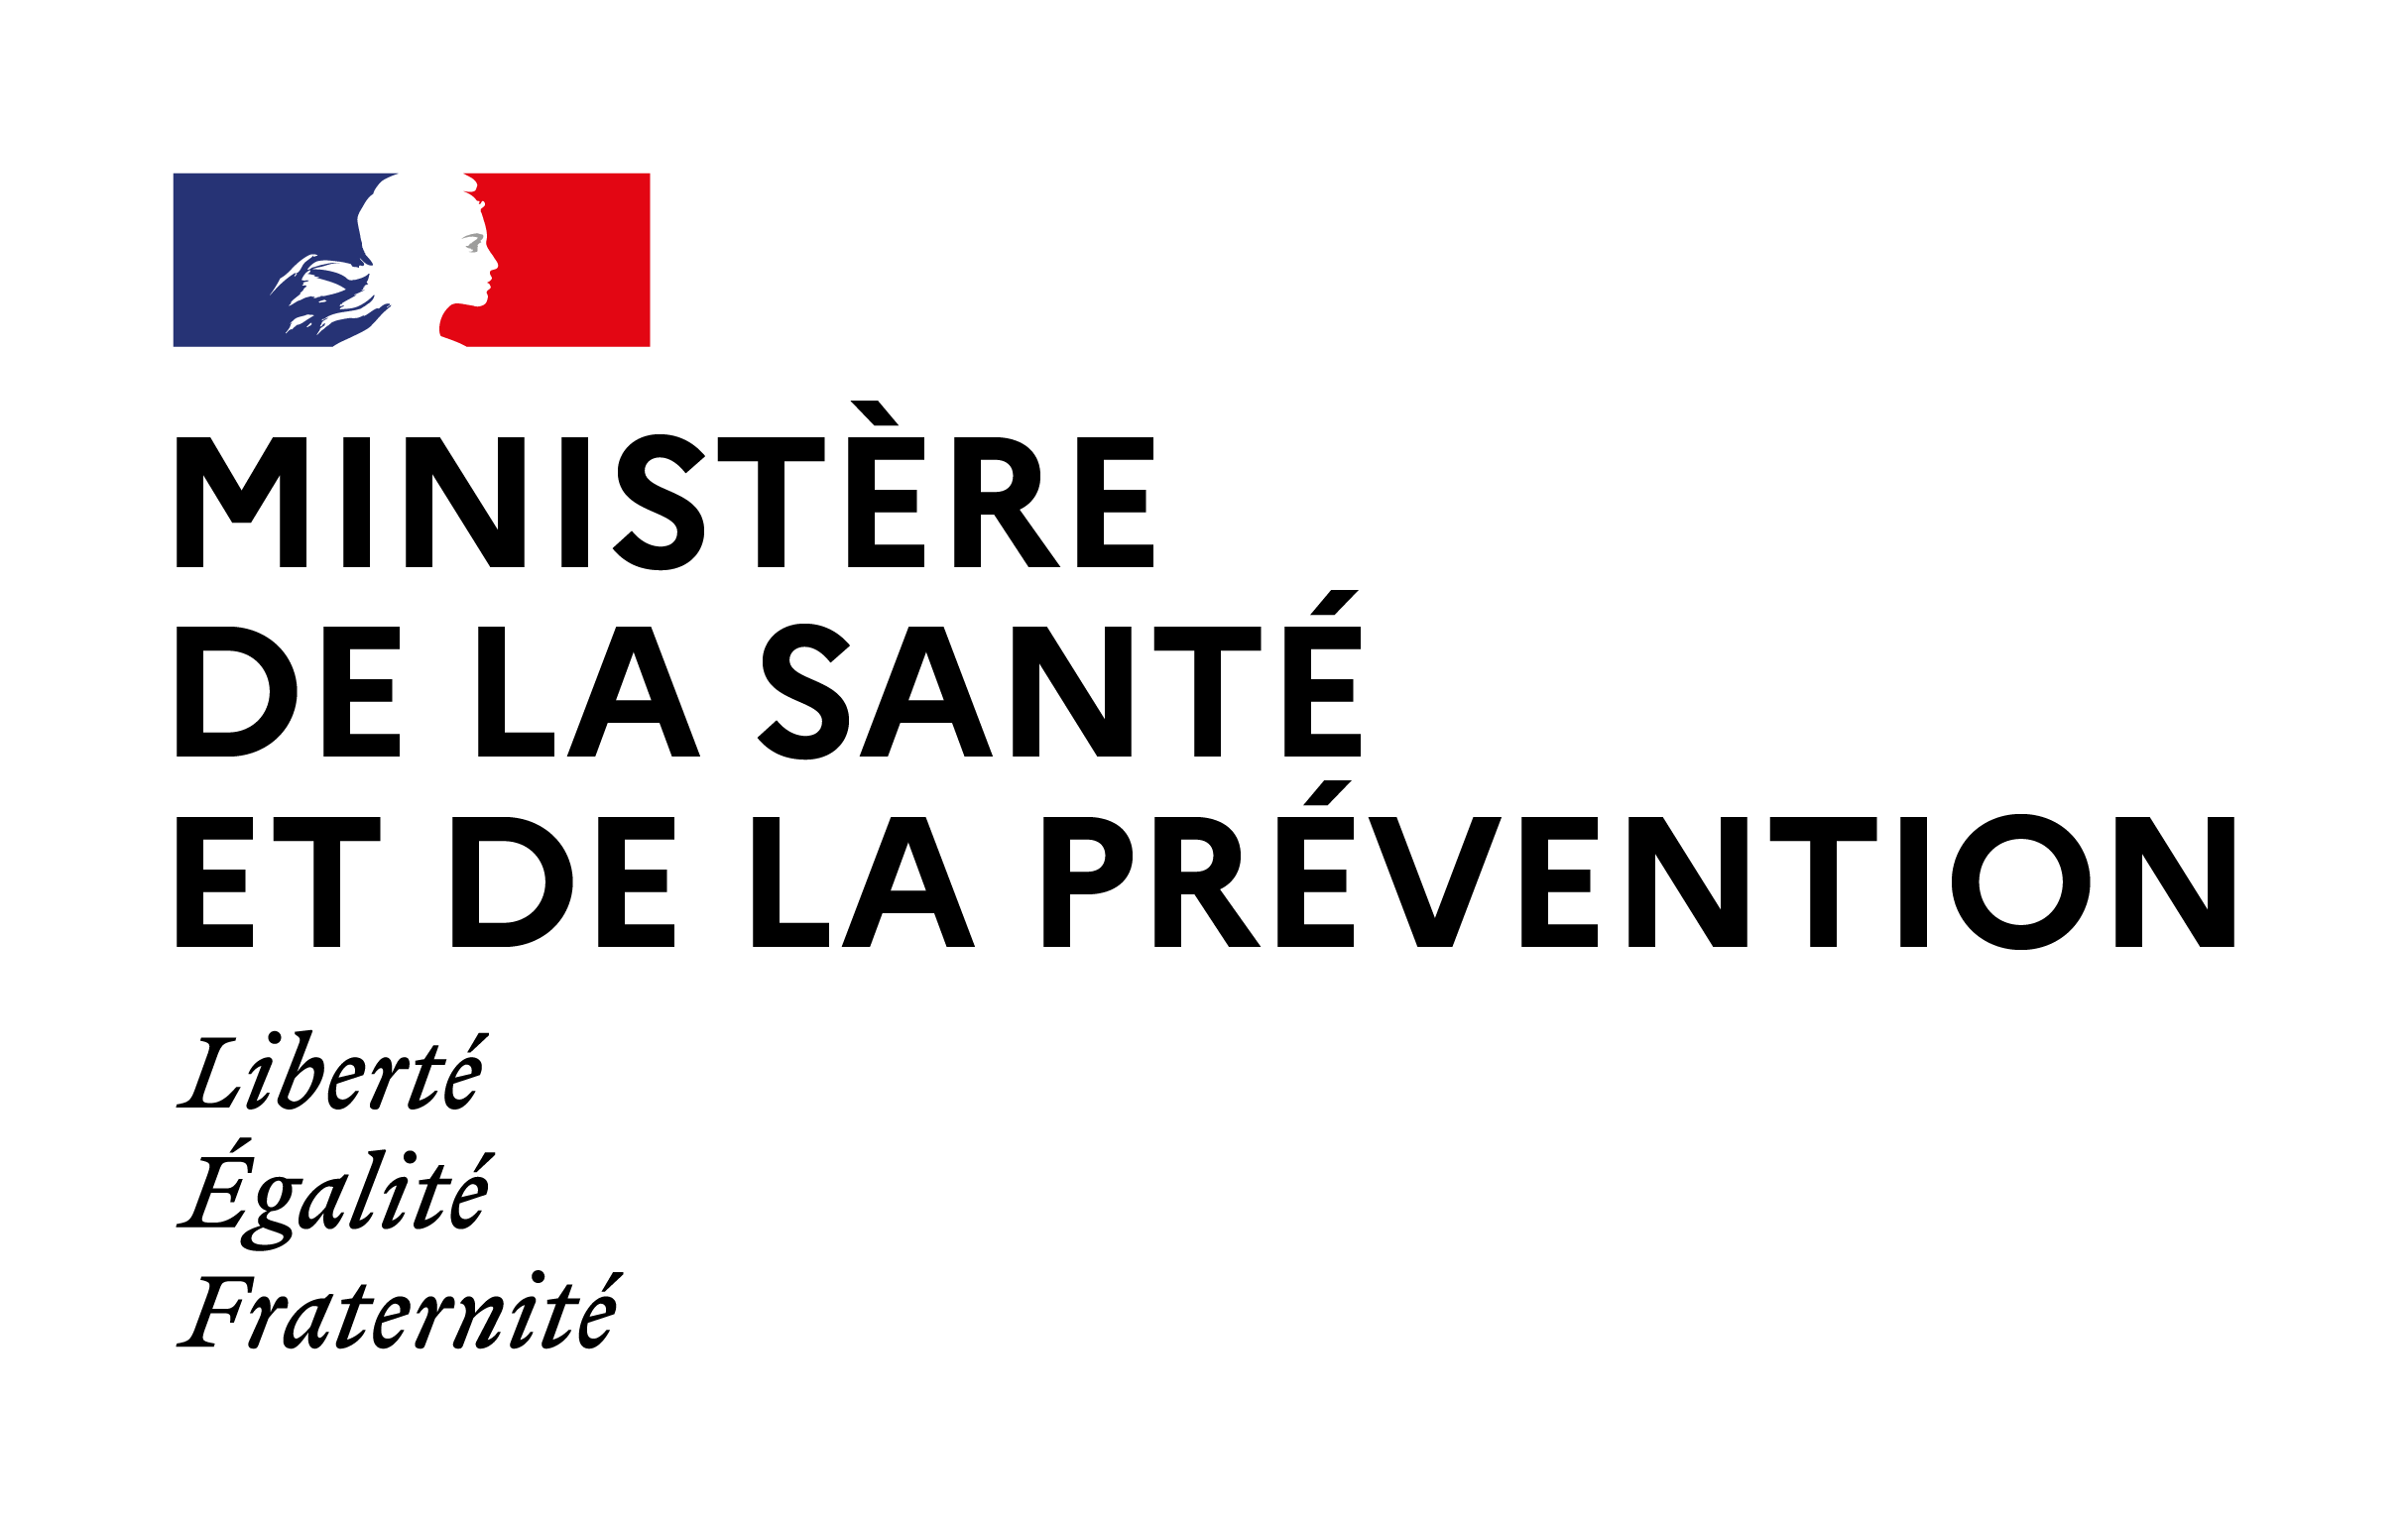 Ministère de la santé et de la prévention